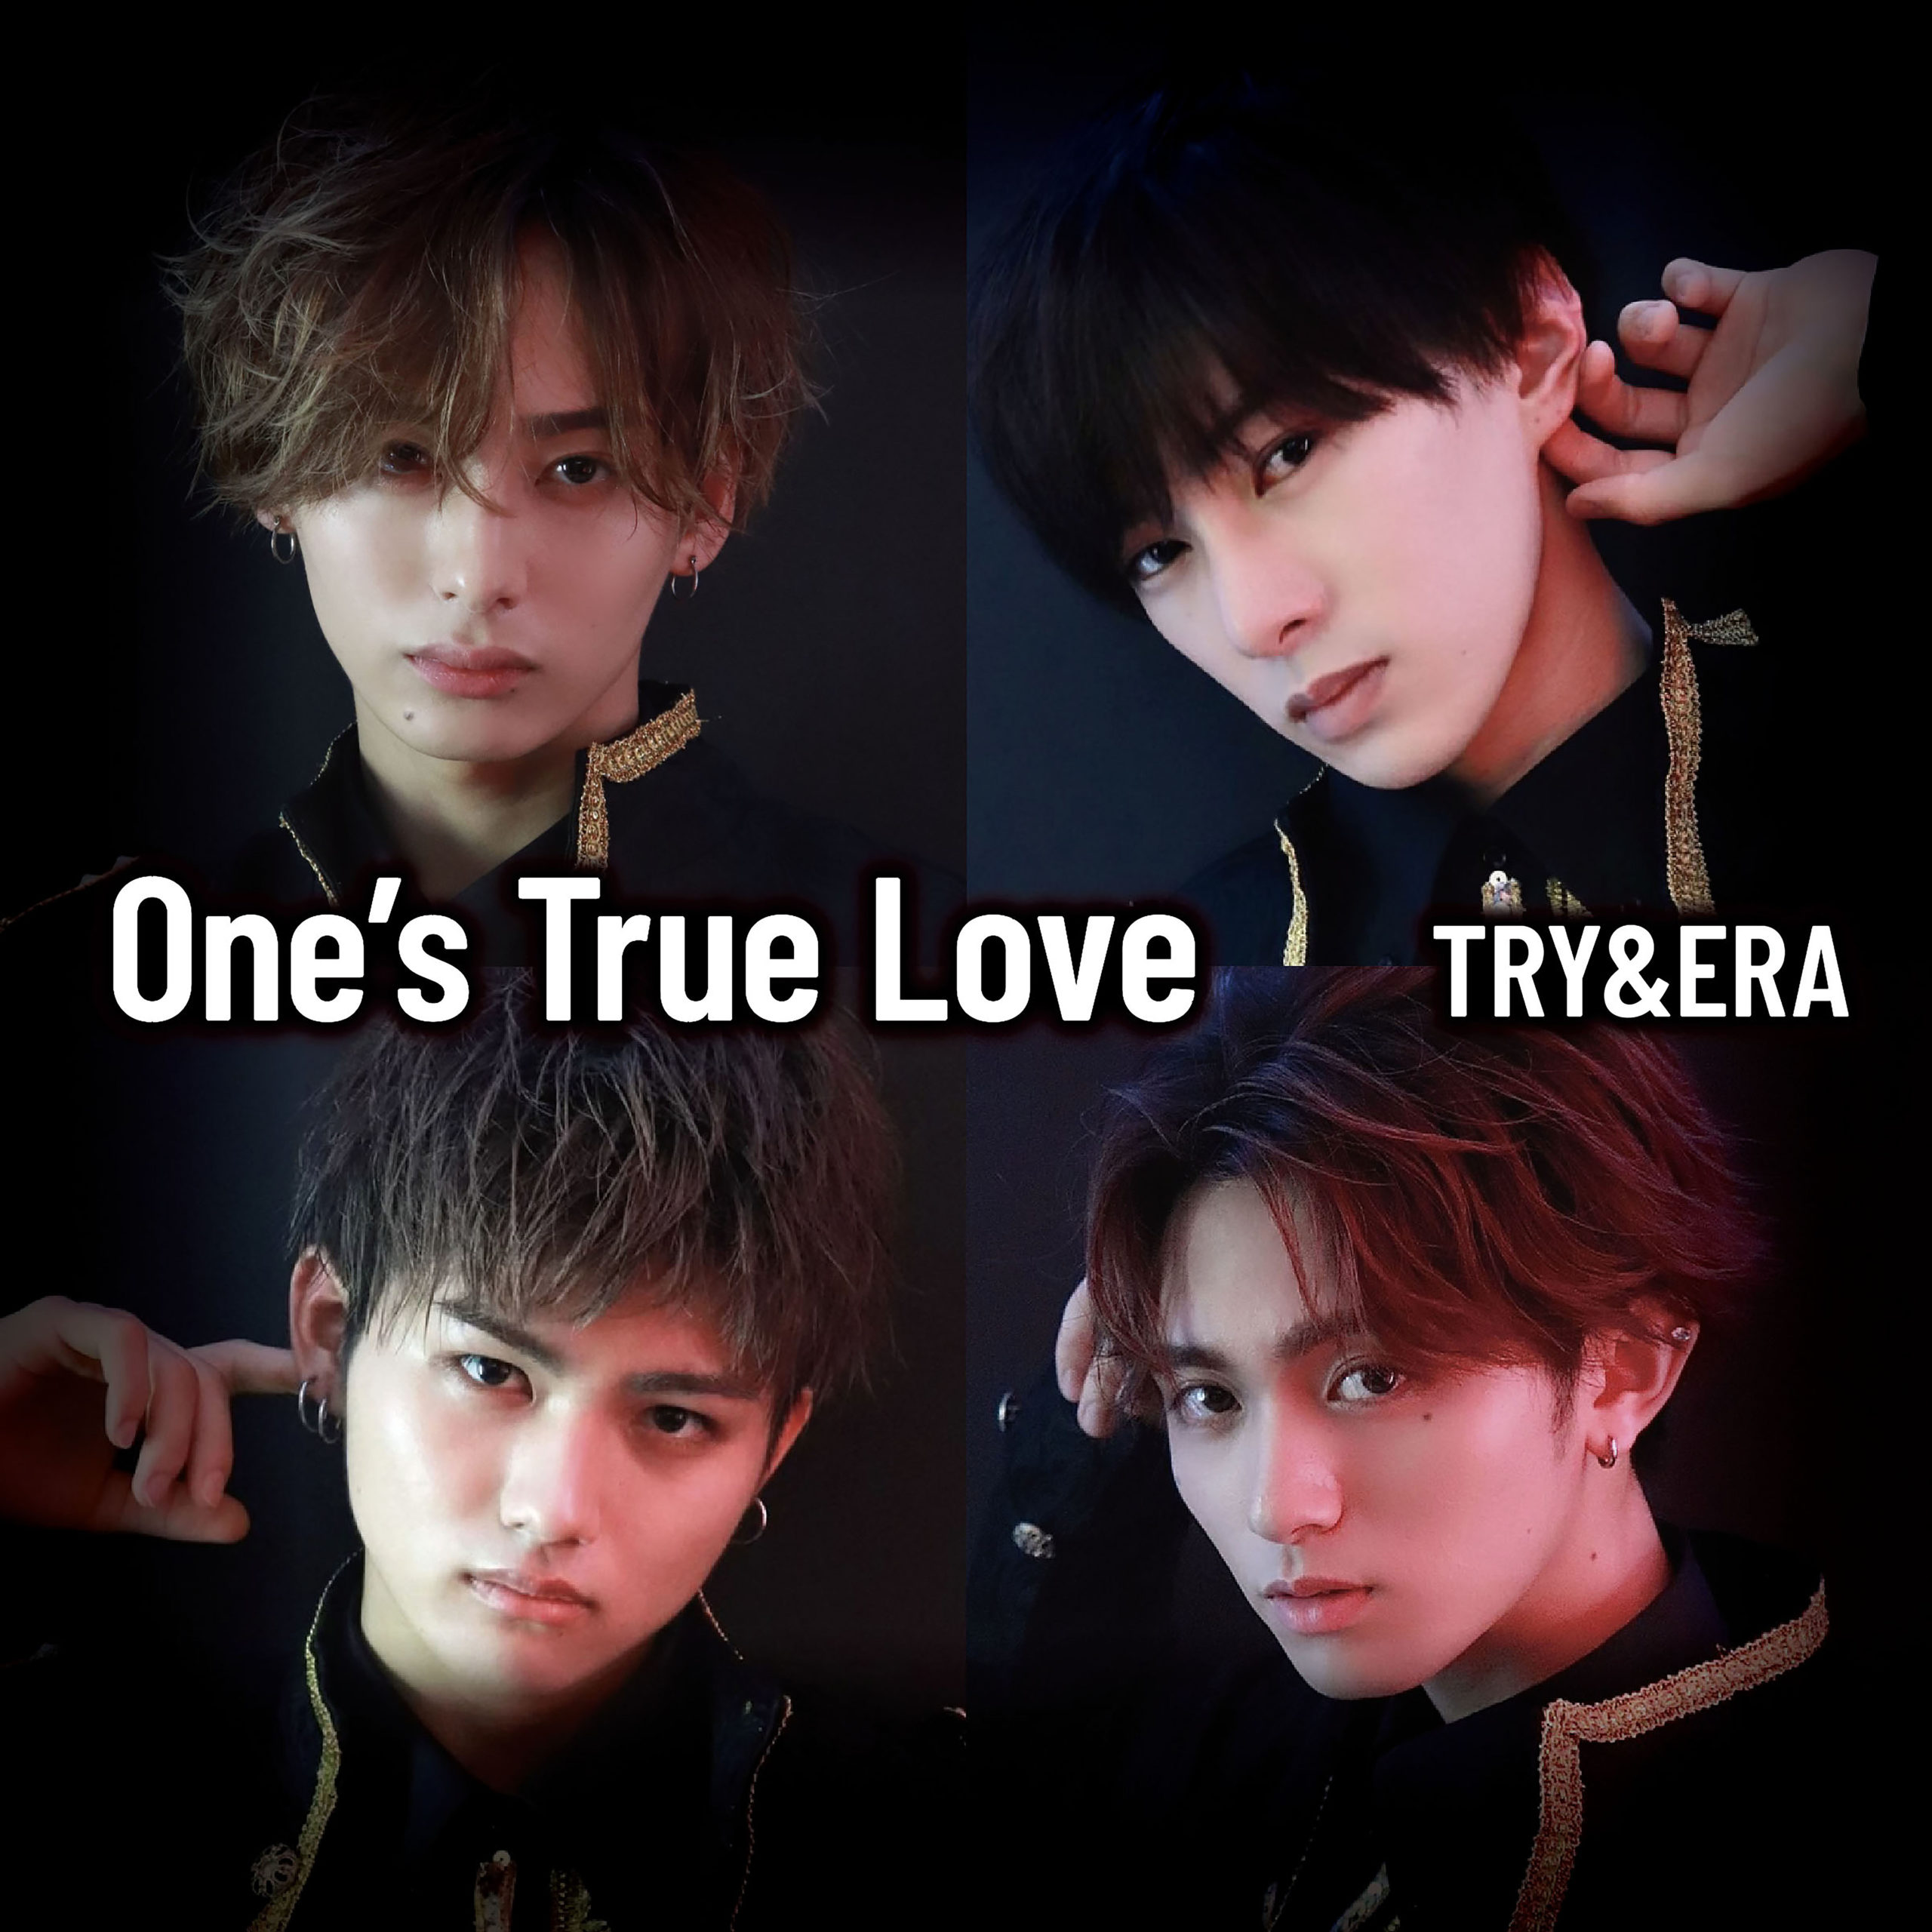 One’s True Love